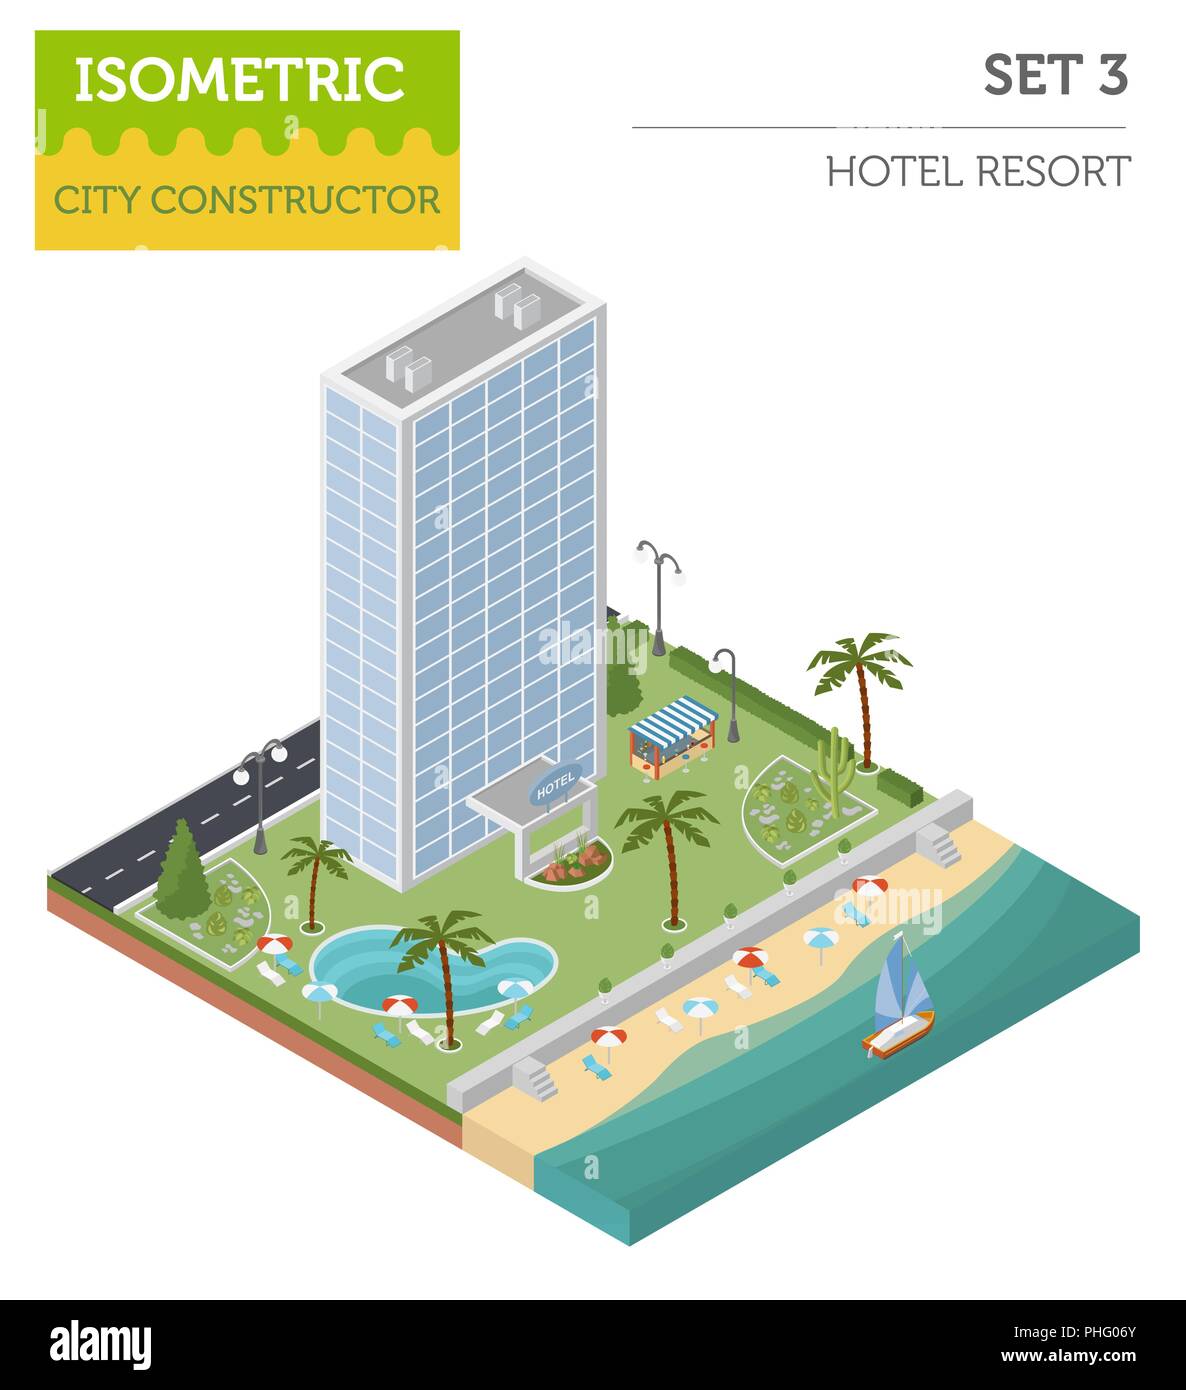 Appartamento 3D isometrica resort hotel e mappa della città costruttore elementi come edificio, Spiaggia, piscina, giardino, bar, la natura isolata su bianco. Costruire Illustrazione Vettoriale